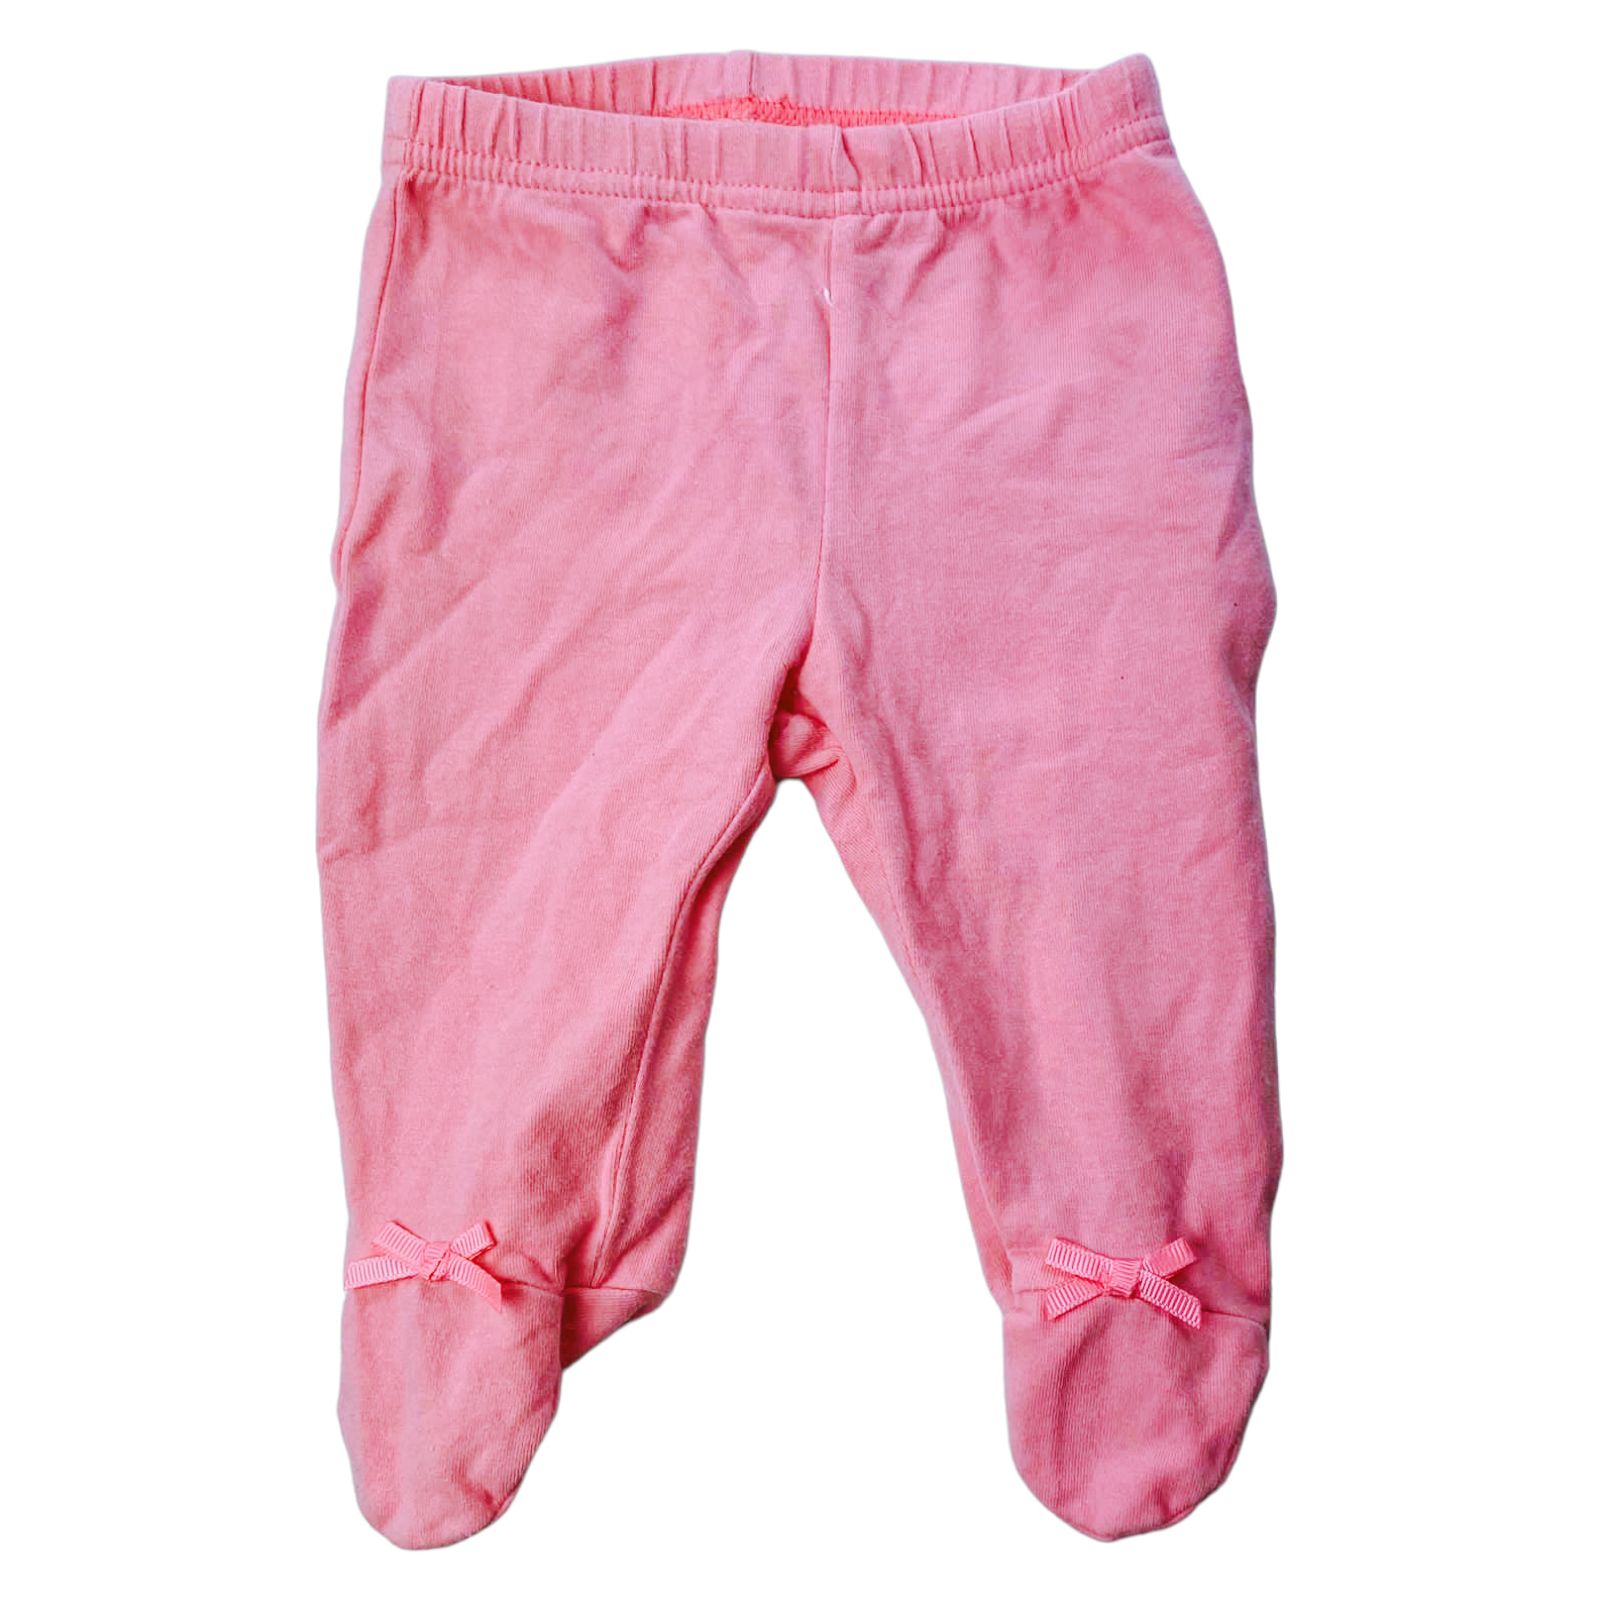 Panty de algodon rosada con lazo